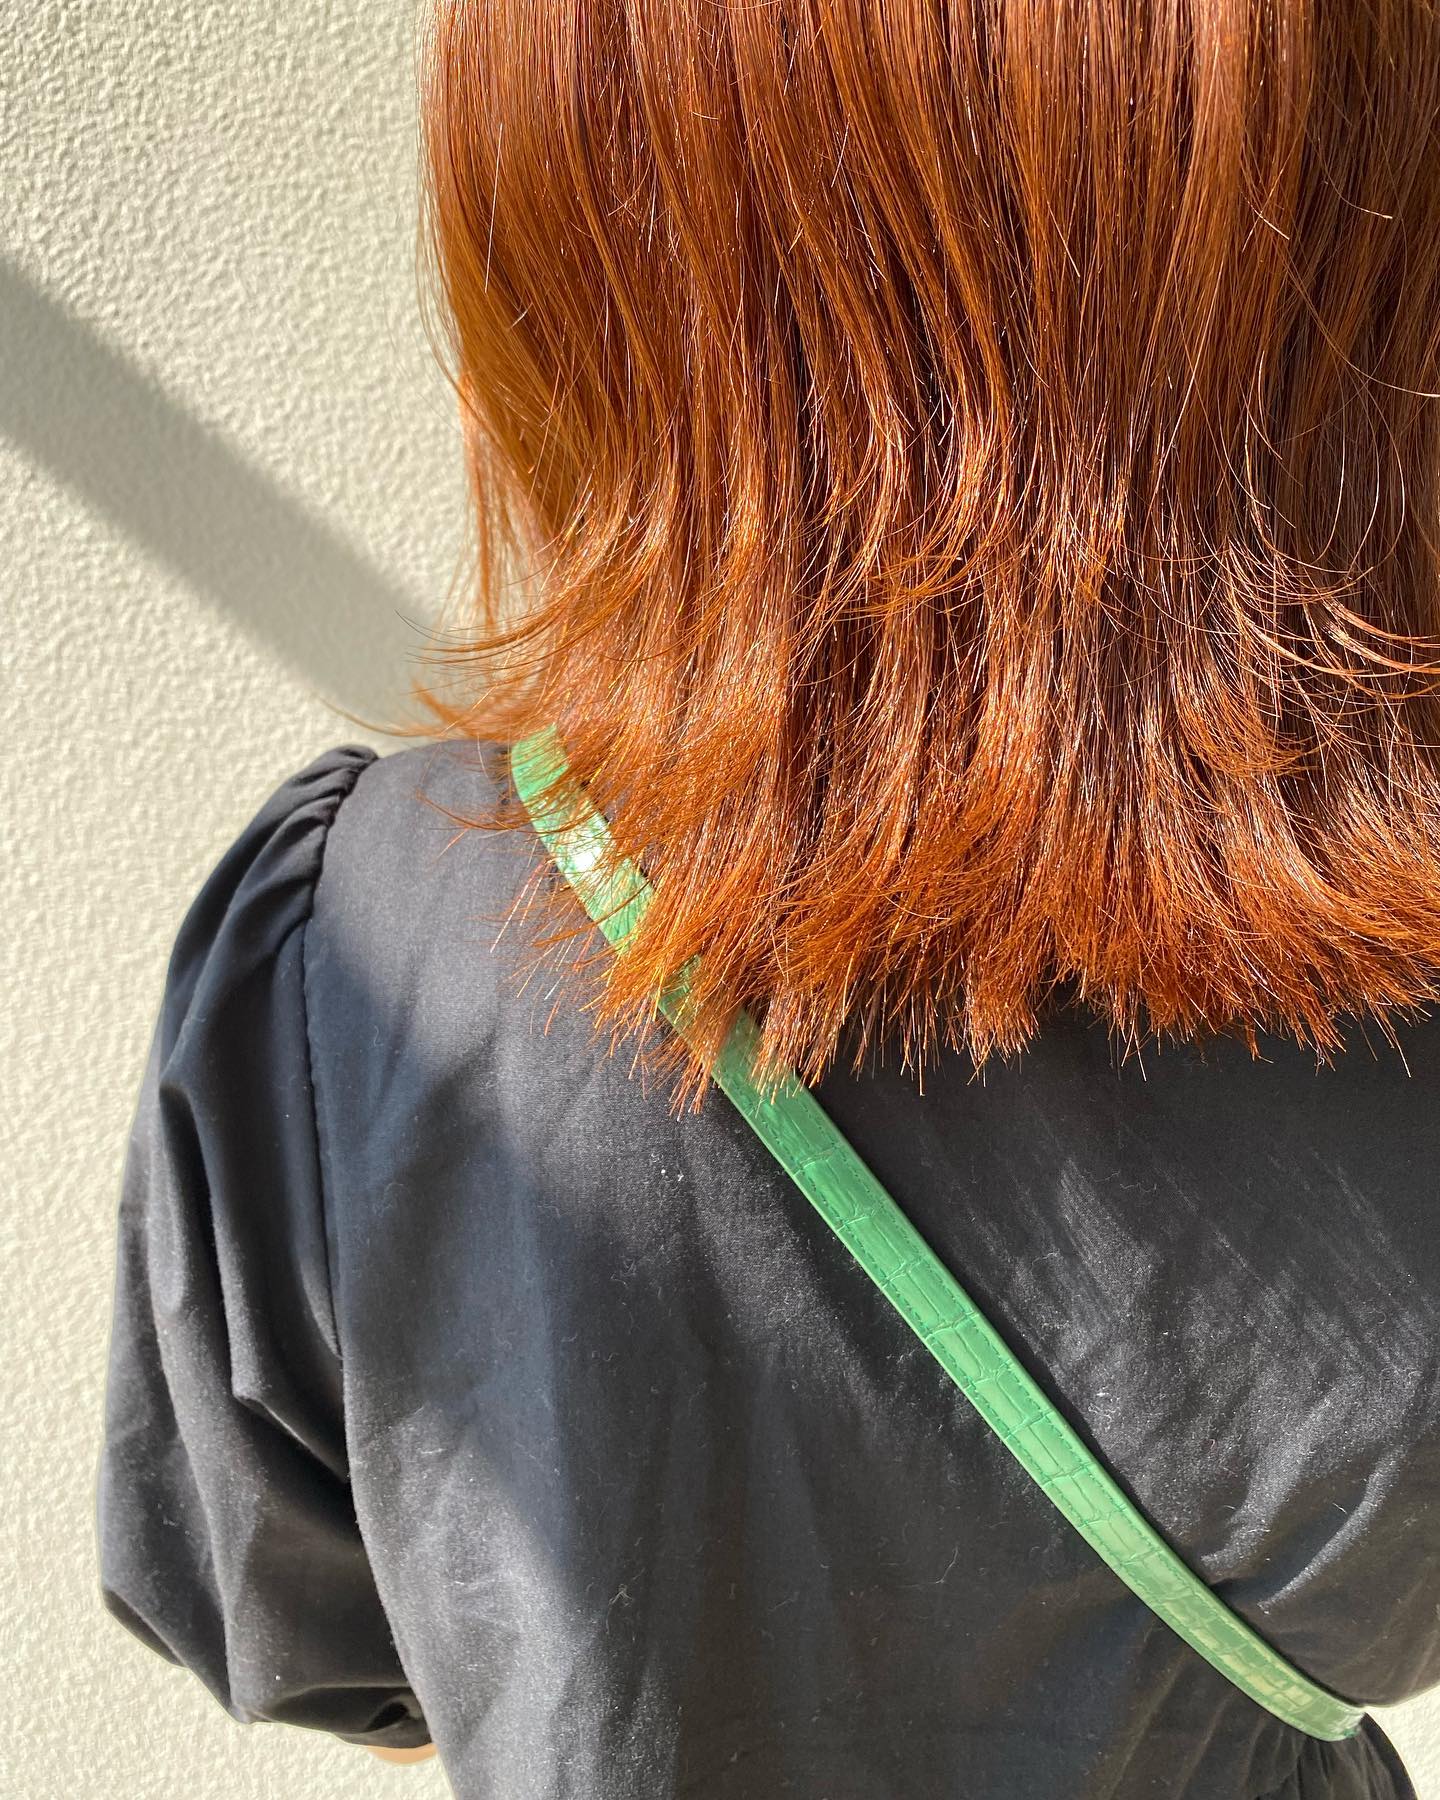 ︎．．ｏｒａｎｇｅ　ｃｏｌｏｒ夏っぽいカラーでイメージチェンジしてみませんか？？？🏻夏のイベント前の髪の毛の綺麗のお手伝いをぜひさせていただきたいです🏻‍♀️#orangehair #ハイトーン#レイヤーカット